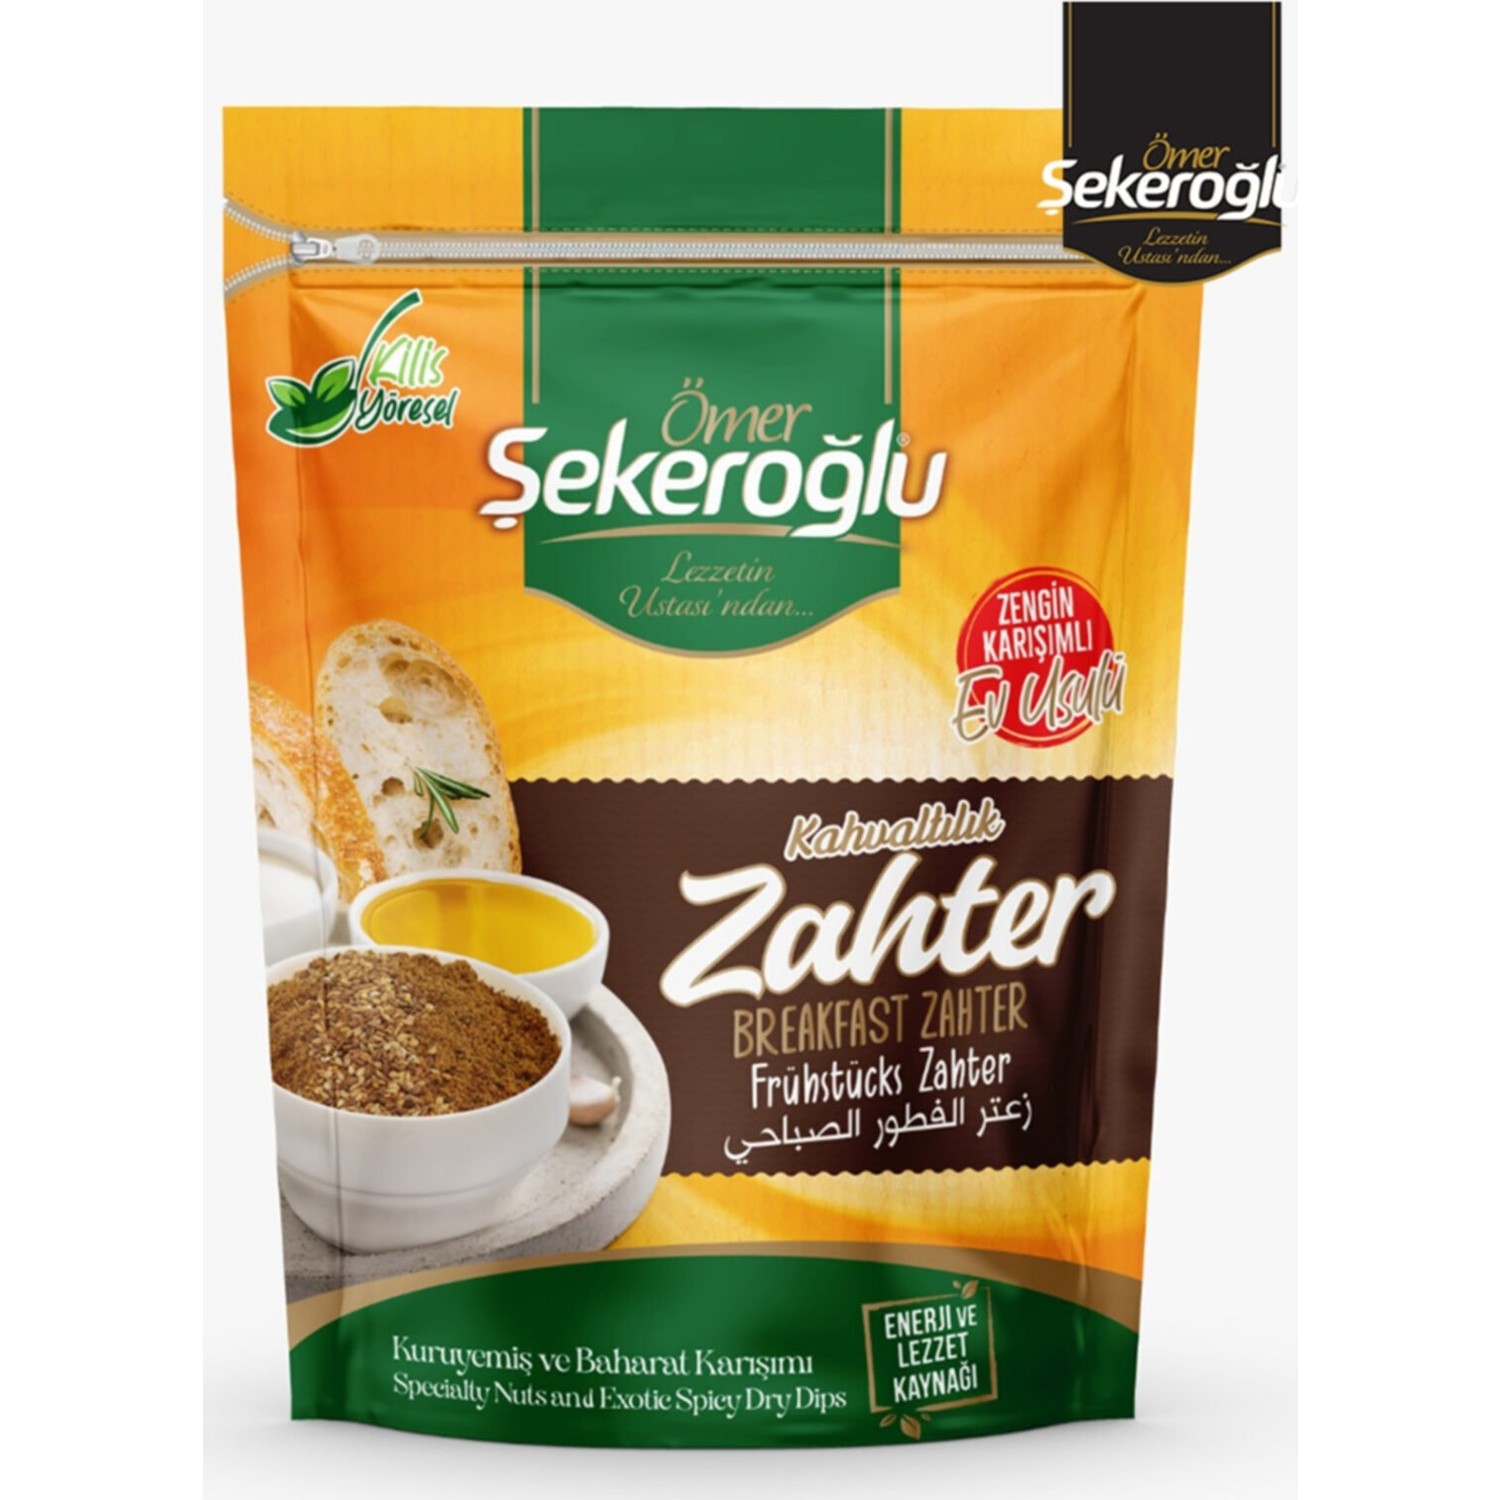 Ömer Şekeroğlu Kahvaltılık Zahter/ Breakfast Zahter 250 gr